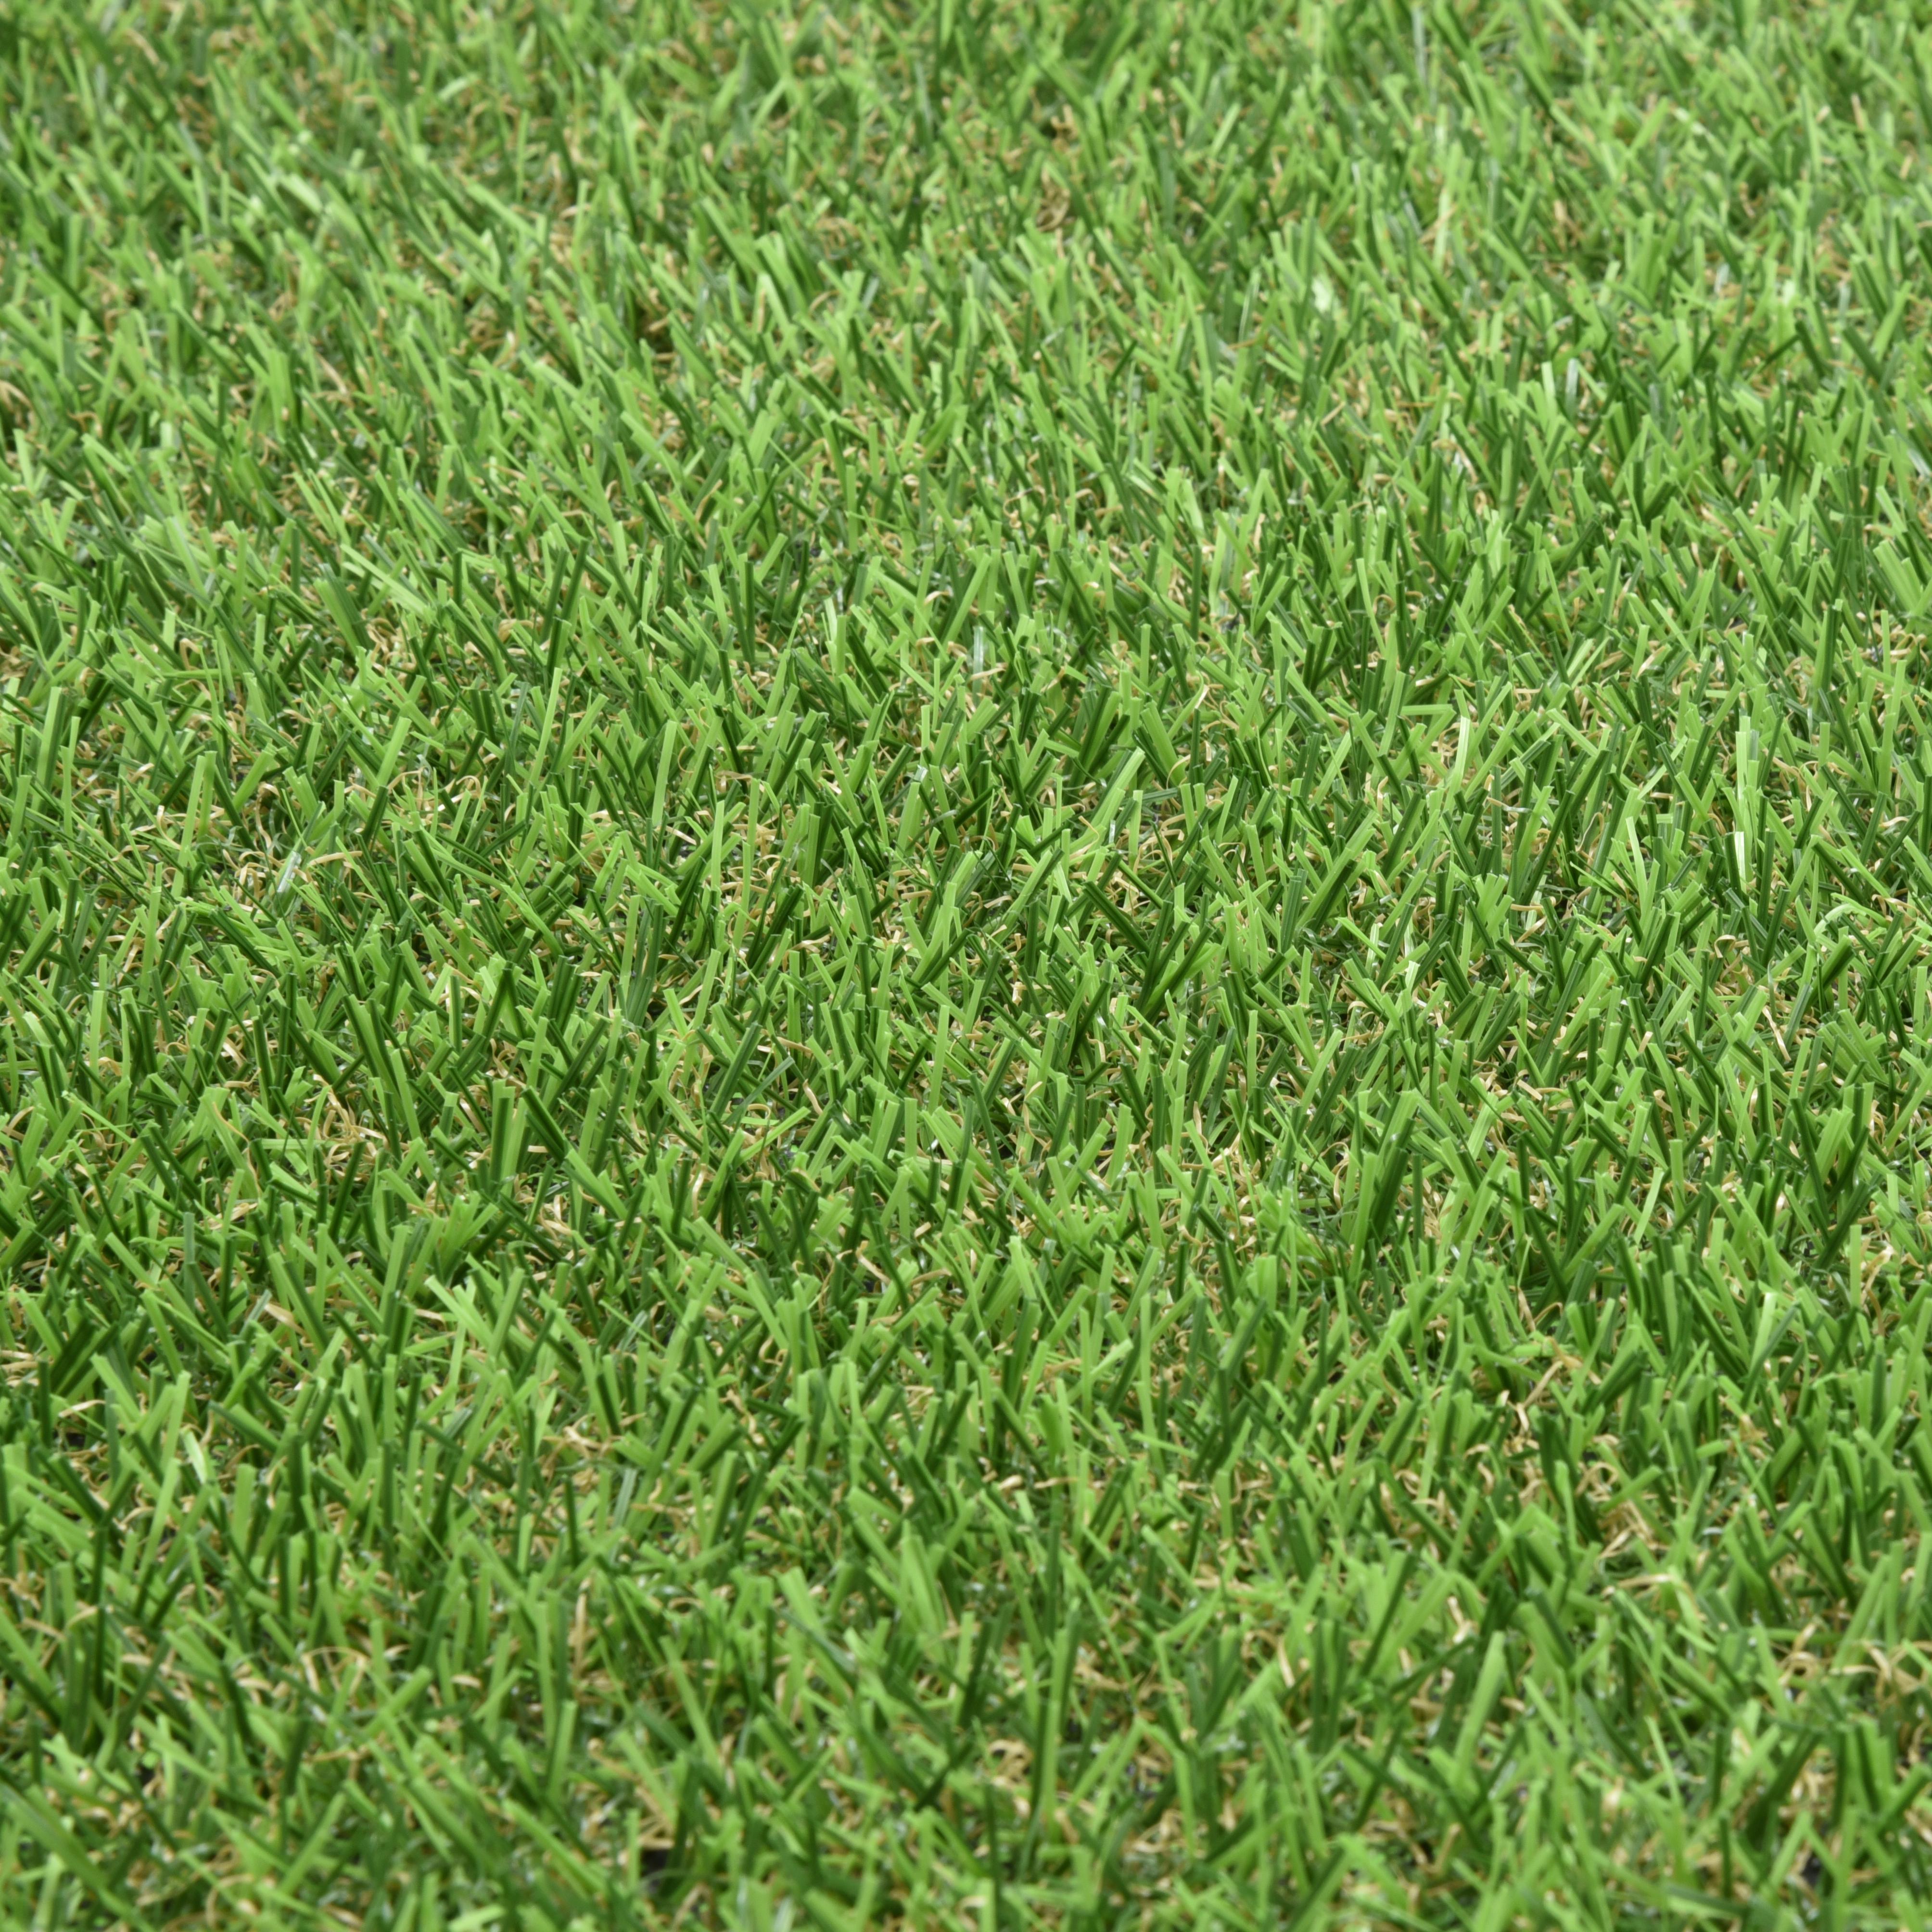 Купить траву в леруа мерлен. Газон рулонный в Леруа Мерлен. Искусственная трава grass 1*2м 6 мм. Покрытие искусственное «трава grass». Искусственный газон Леруа Мерлен.